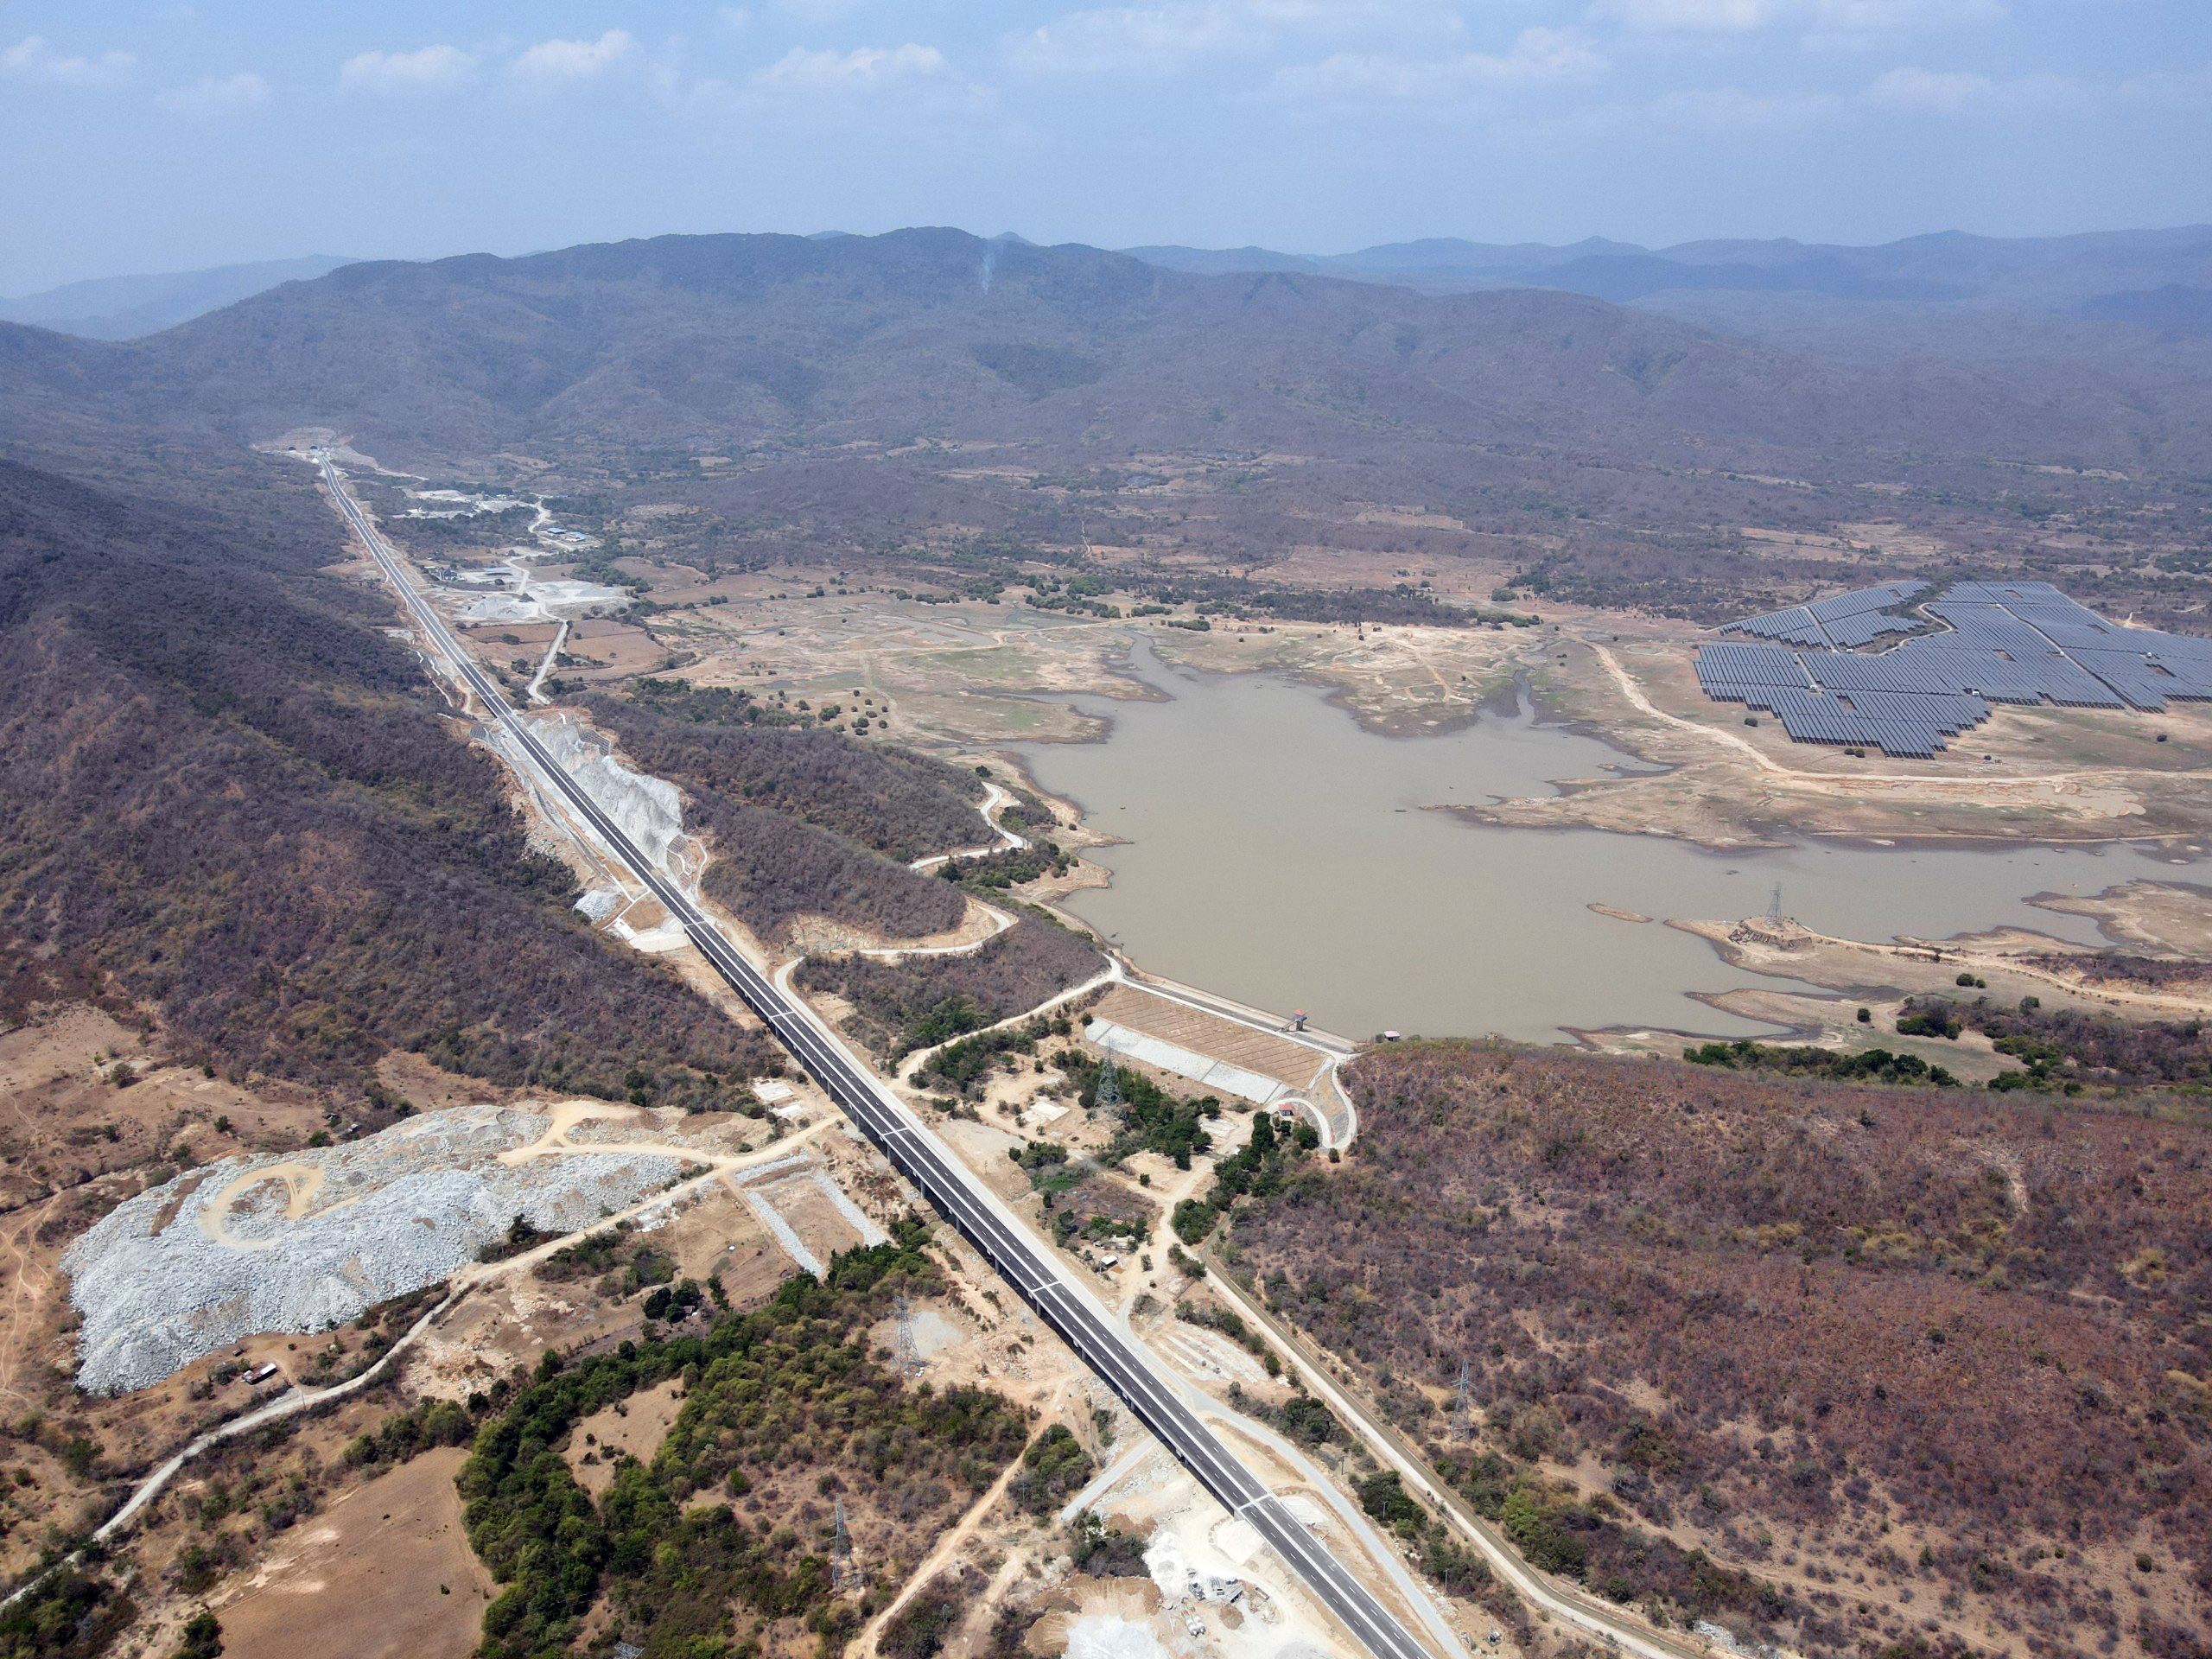 Tuyến cao tốc Cam Lâm - Vĩnh Hảo chạy xuyên qua vùng đất khô cằn và địa hình đồi, núi. Hiện, nhà thầu đang tập trung hoàn thiện việc kẻ vạch, vệ sinh mặt đường chuẩn bị thông tuyến vào dịp 30/4 sắp tới.